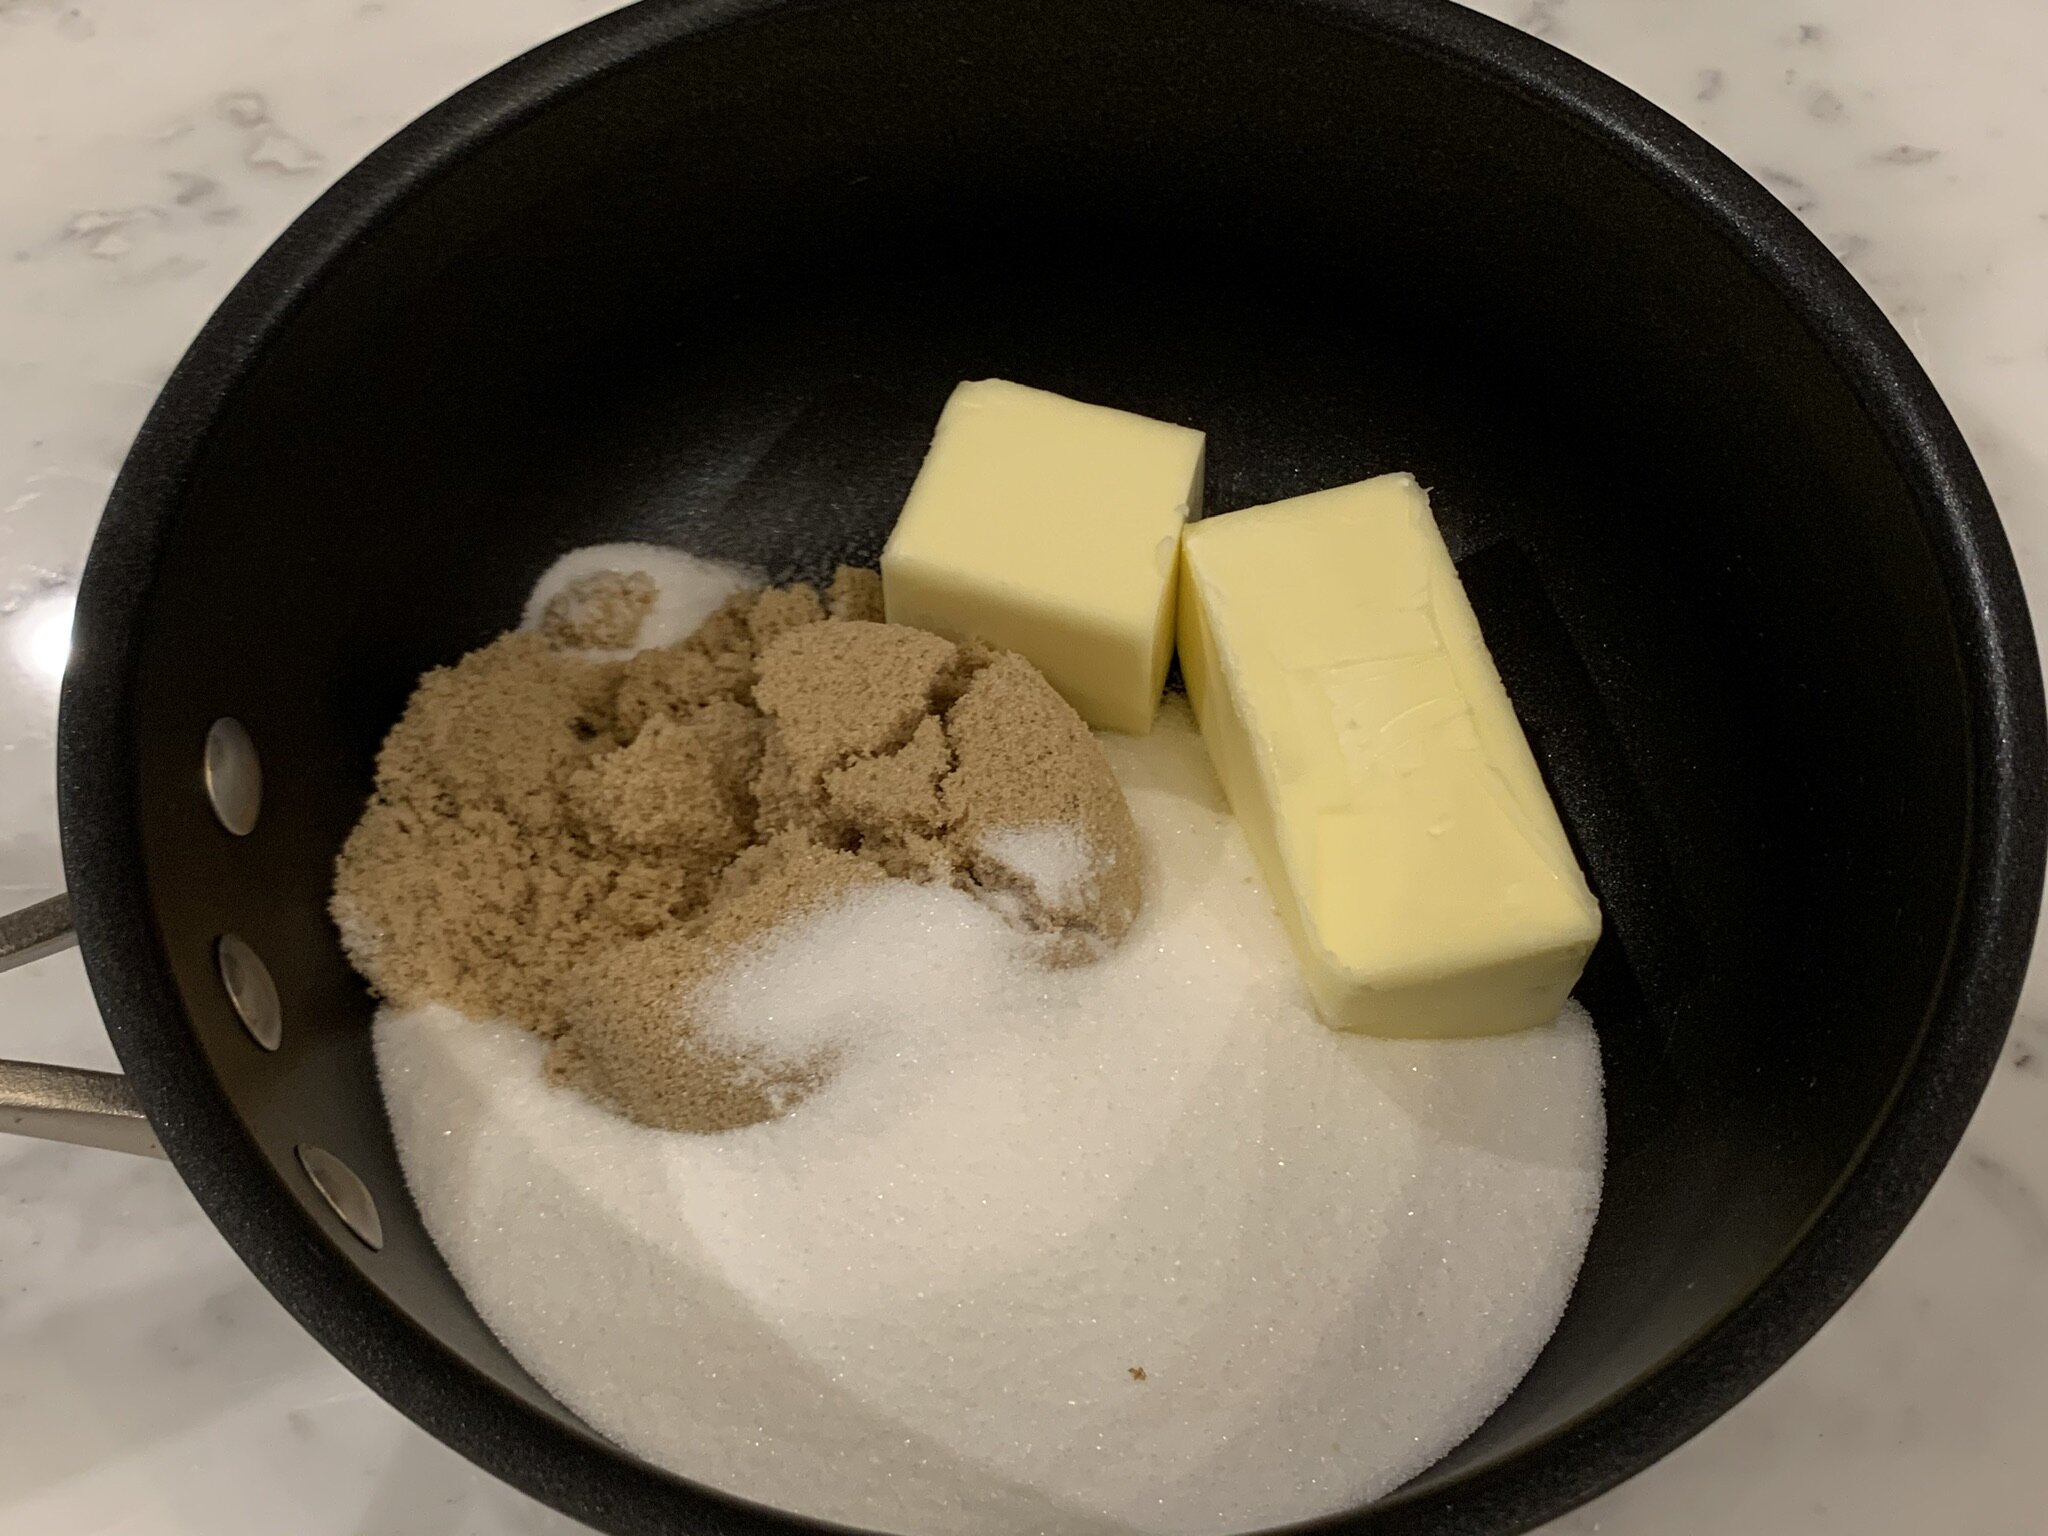 4a) Add sugar &amp; butter.